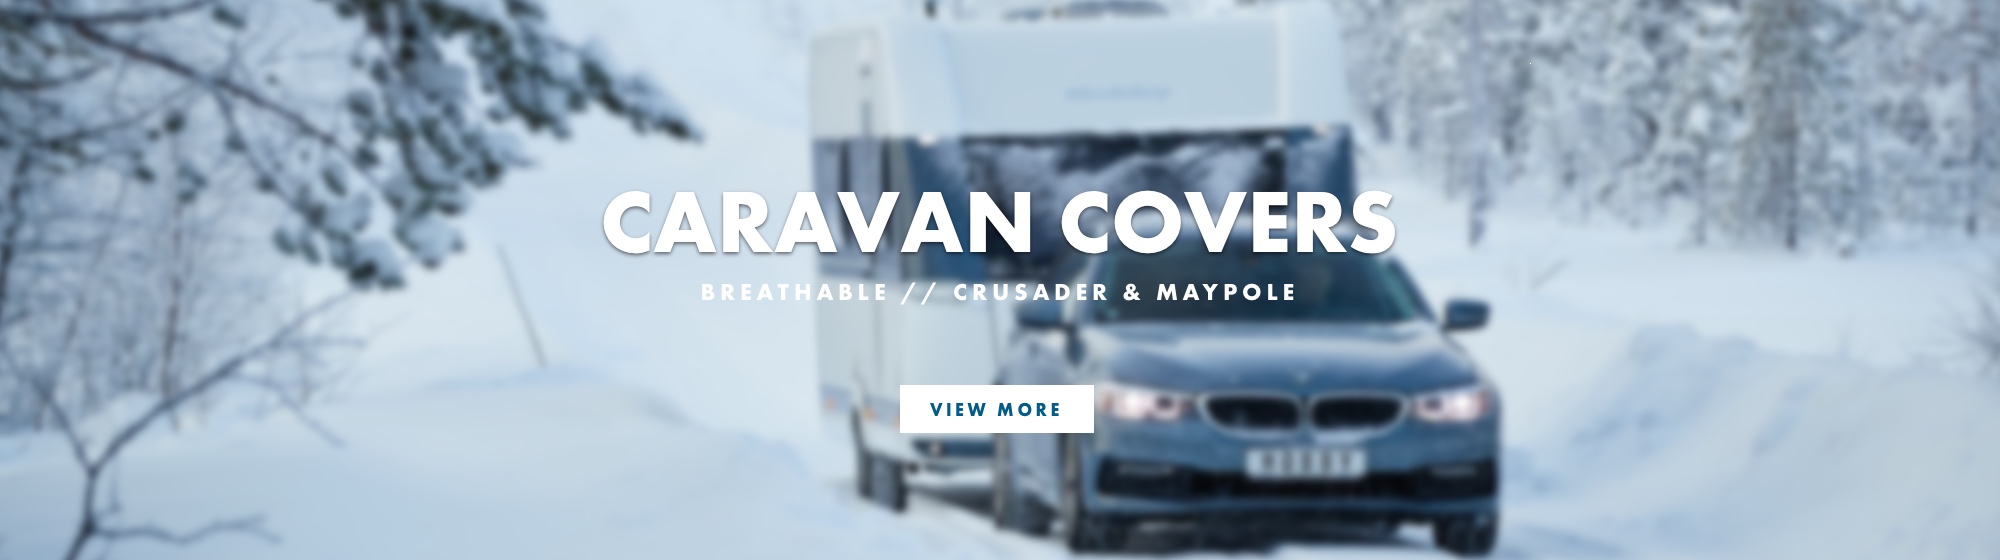 Caravan Covers - Shop Now